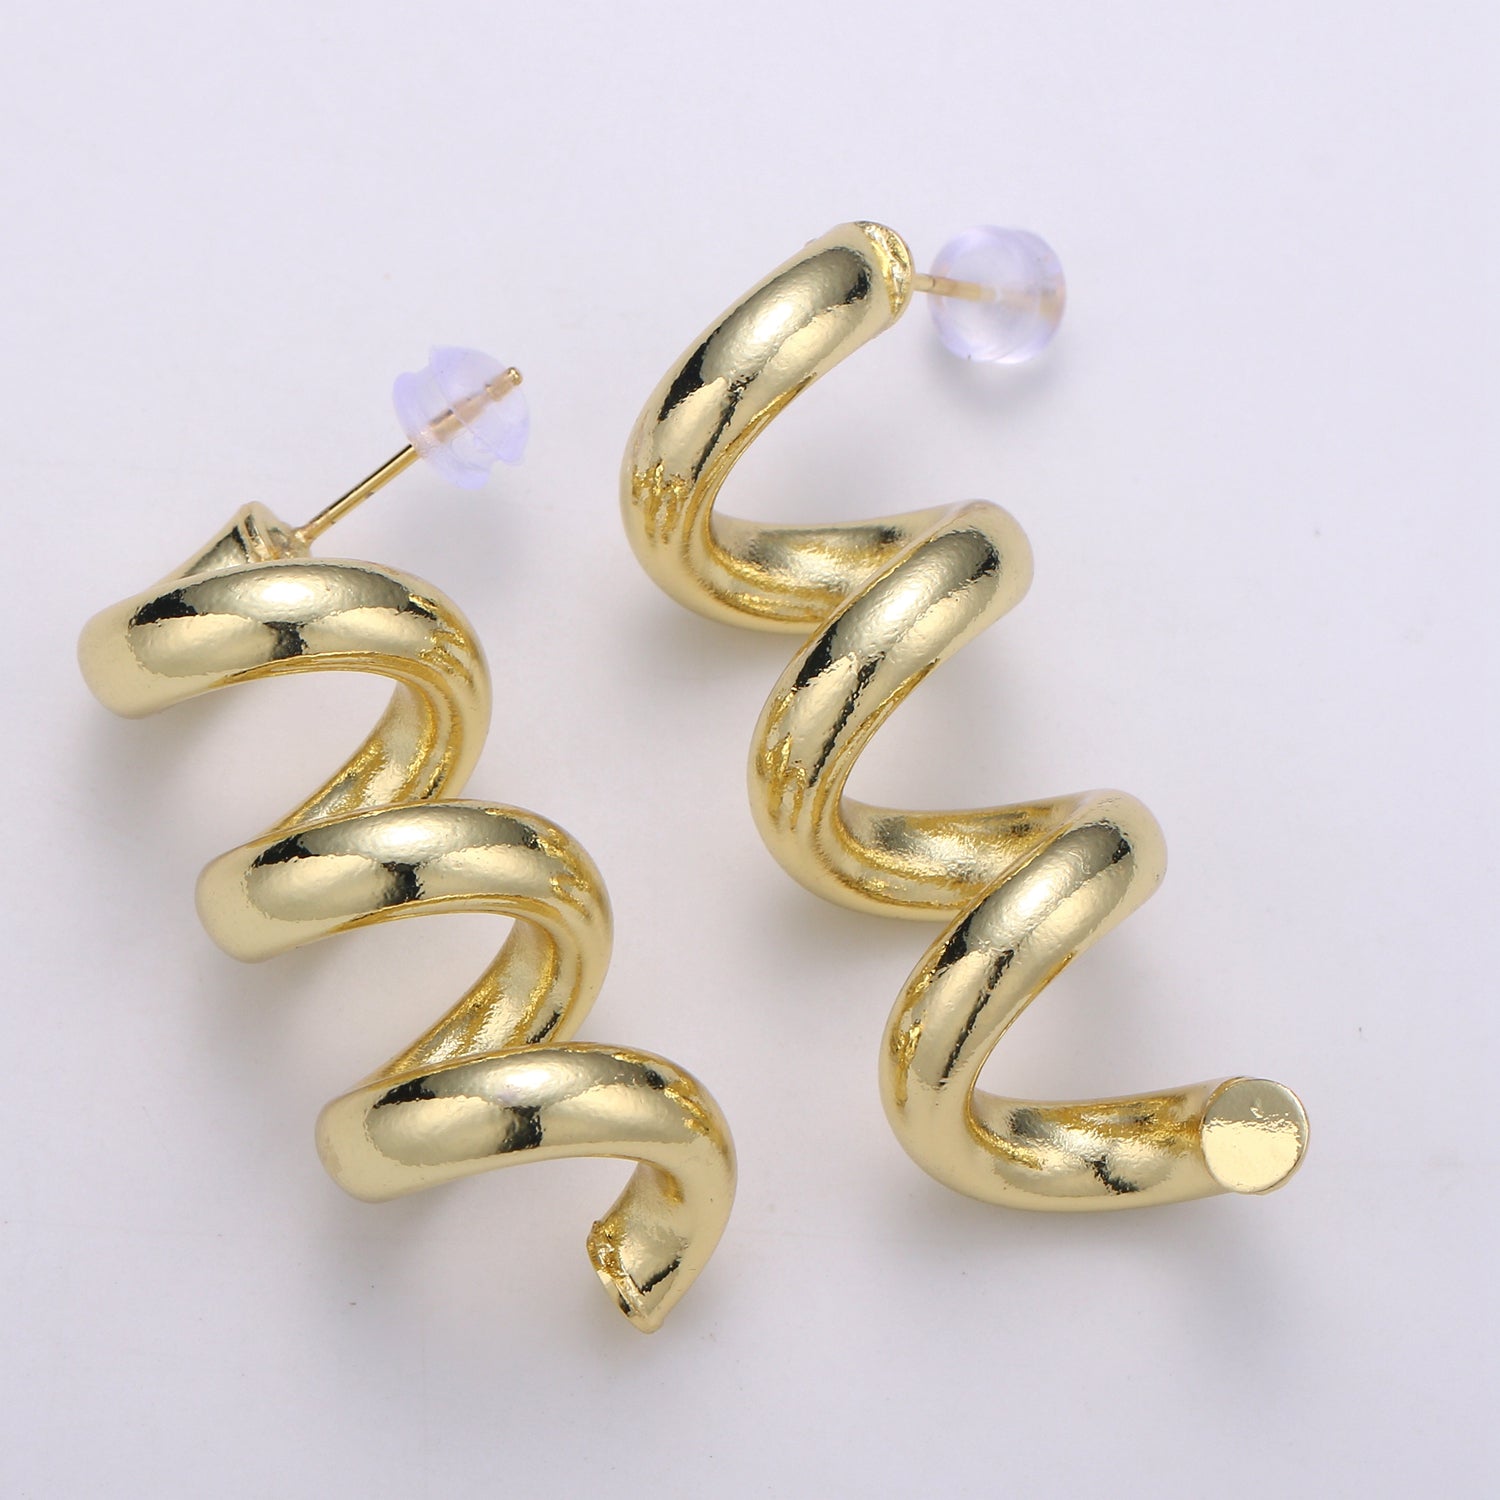 Gold Spiral Earrings, Gold Stud Earrings, Gold Corkscrew Earrings, Gold Chunky Earrings Bold Statement Jewelry Ear-1318 - DLUXCA